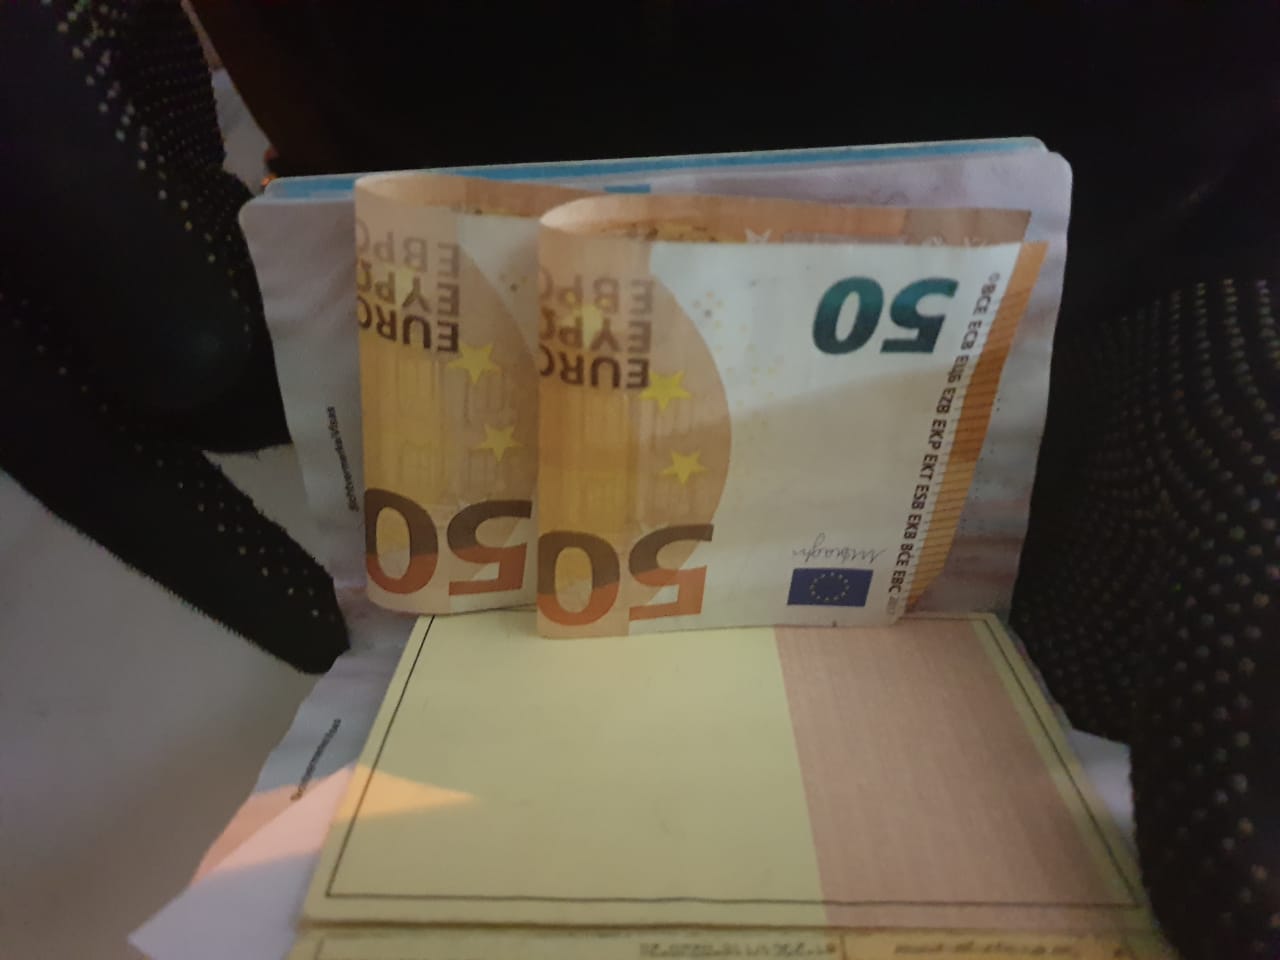 За незаконний пропуск на територію України австрієць пропонував хабар на кордоні у 100 євро